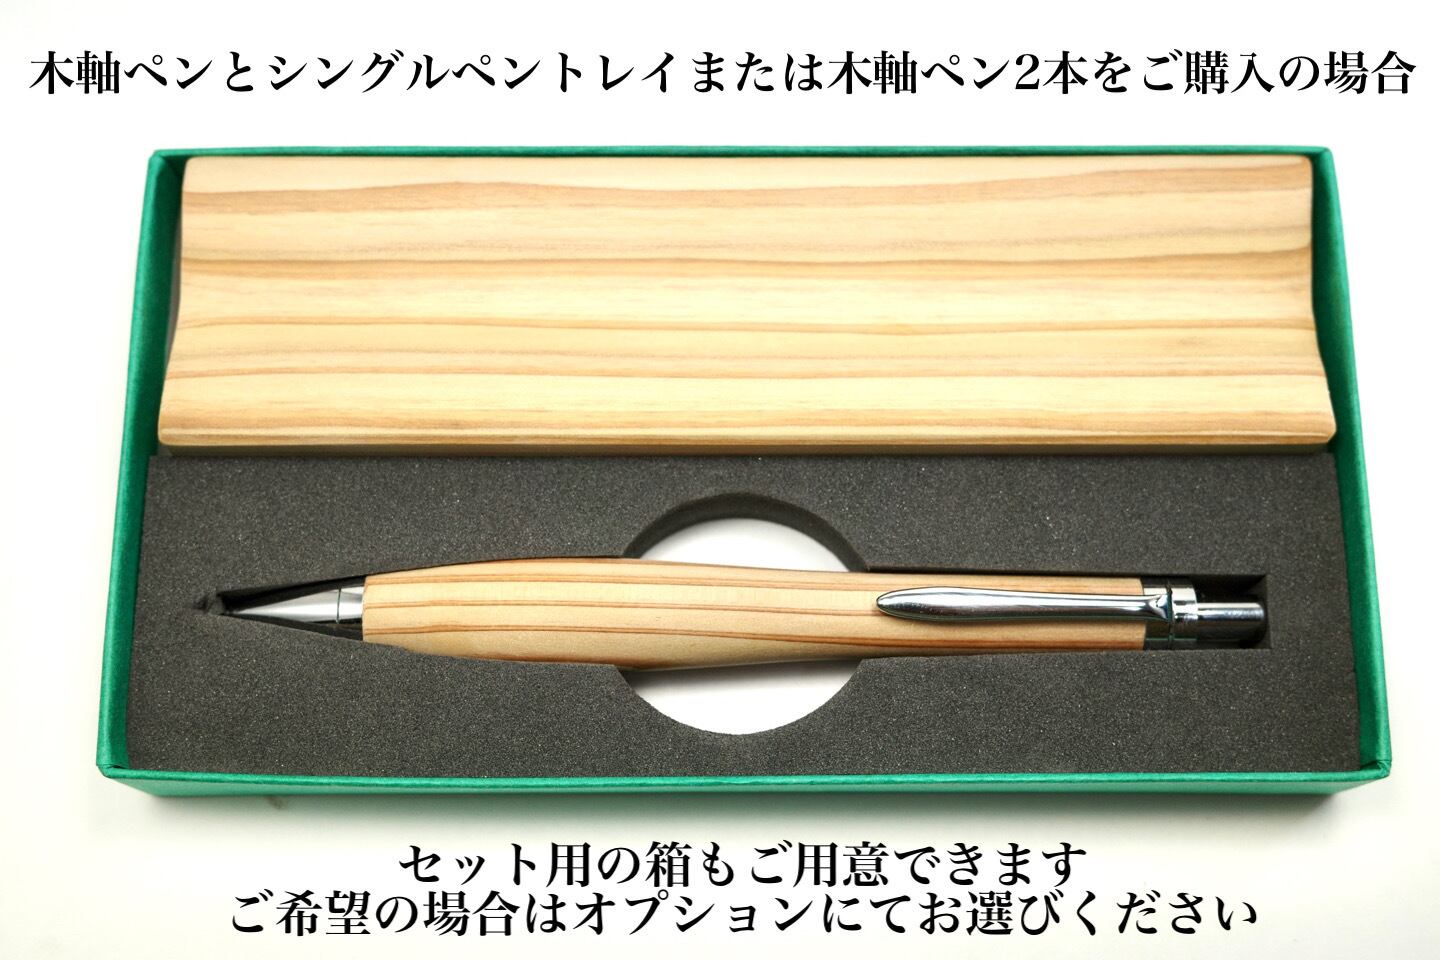 欅 木軸シャープペンシルorボールペンNo.0509105 | 木軸ペン工房KIKI